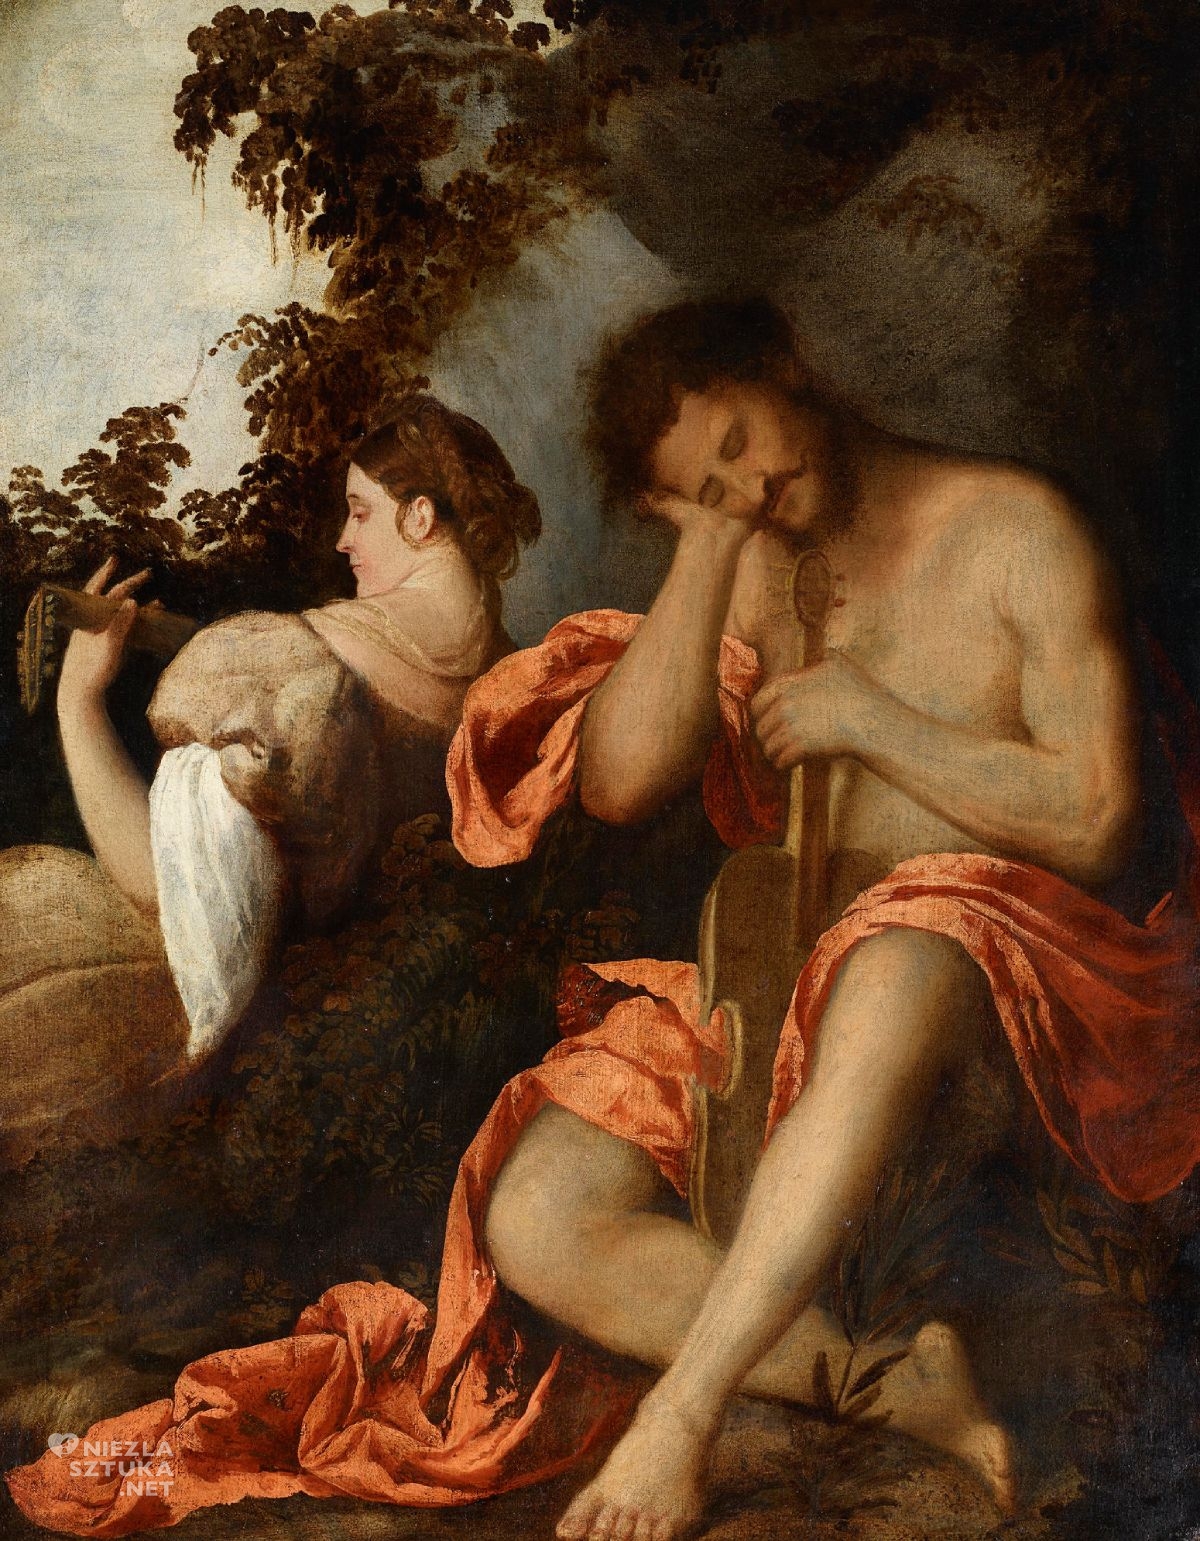 Giovanni Cariani, Muzycy, malarstwo włoskie, sztuka włoska, Bergamo, niezła sztuka